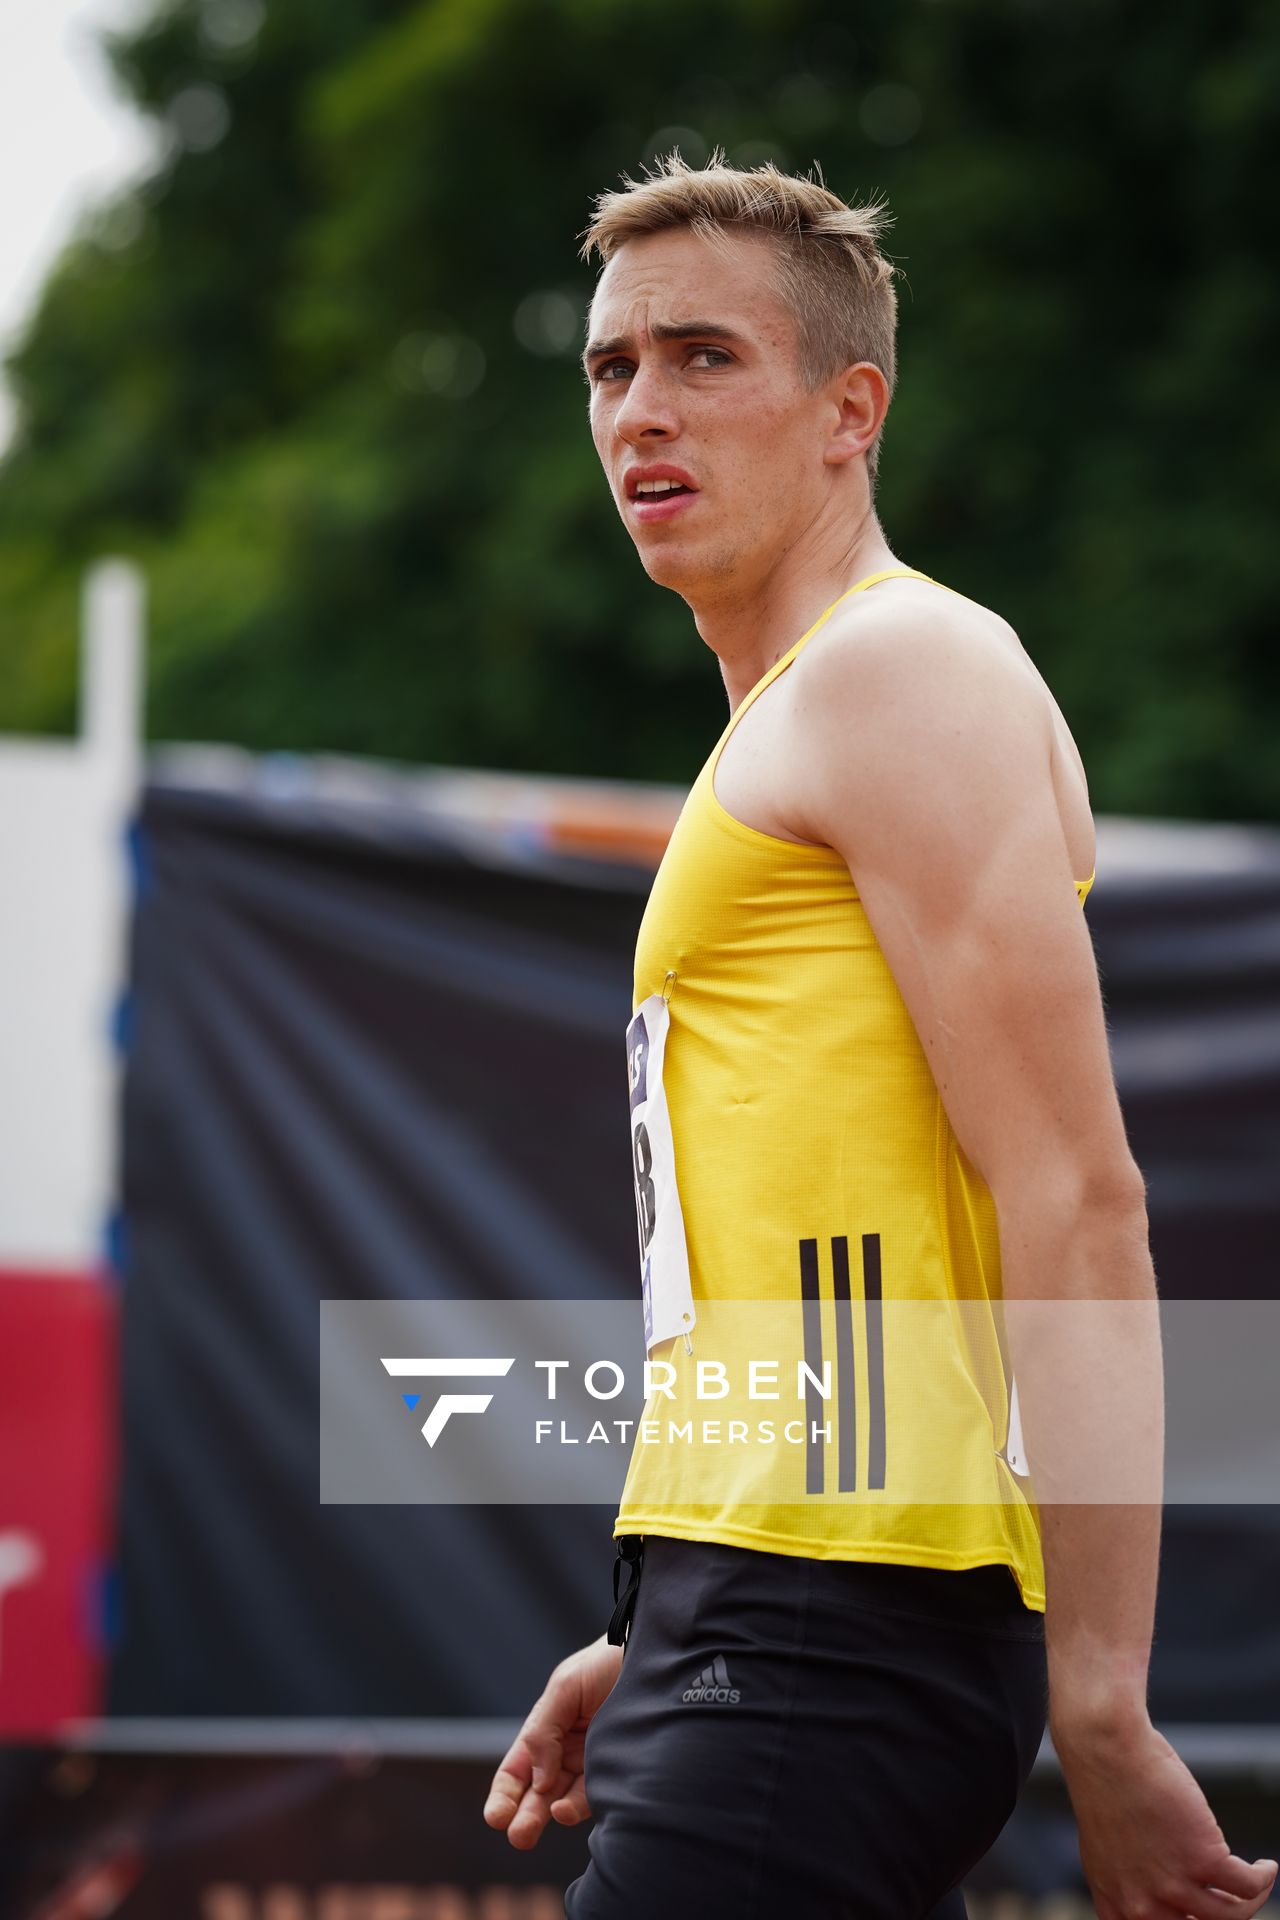 Luis Oberbeck (LG Goettingen) vor dem 400m Vorlauf am 26.06.2021 waehrend den deutschen U23 Leichtathletik-Meisterschaften 2021 im Stadion Oberwerth in Koblenz